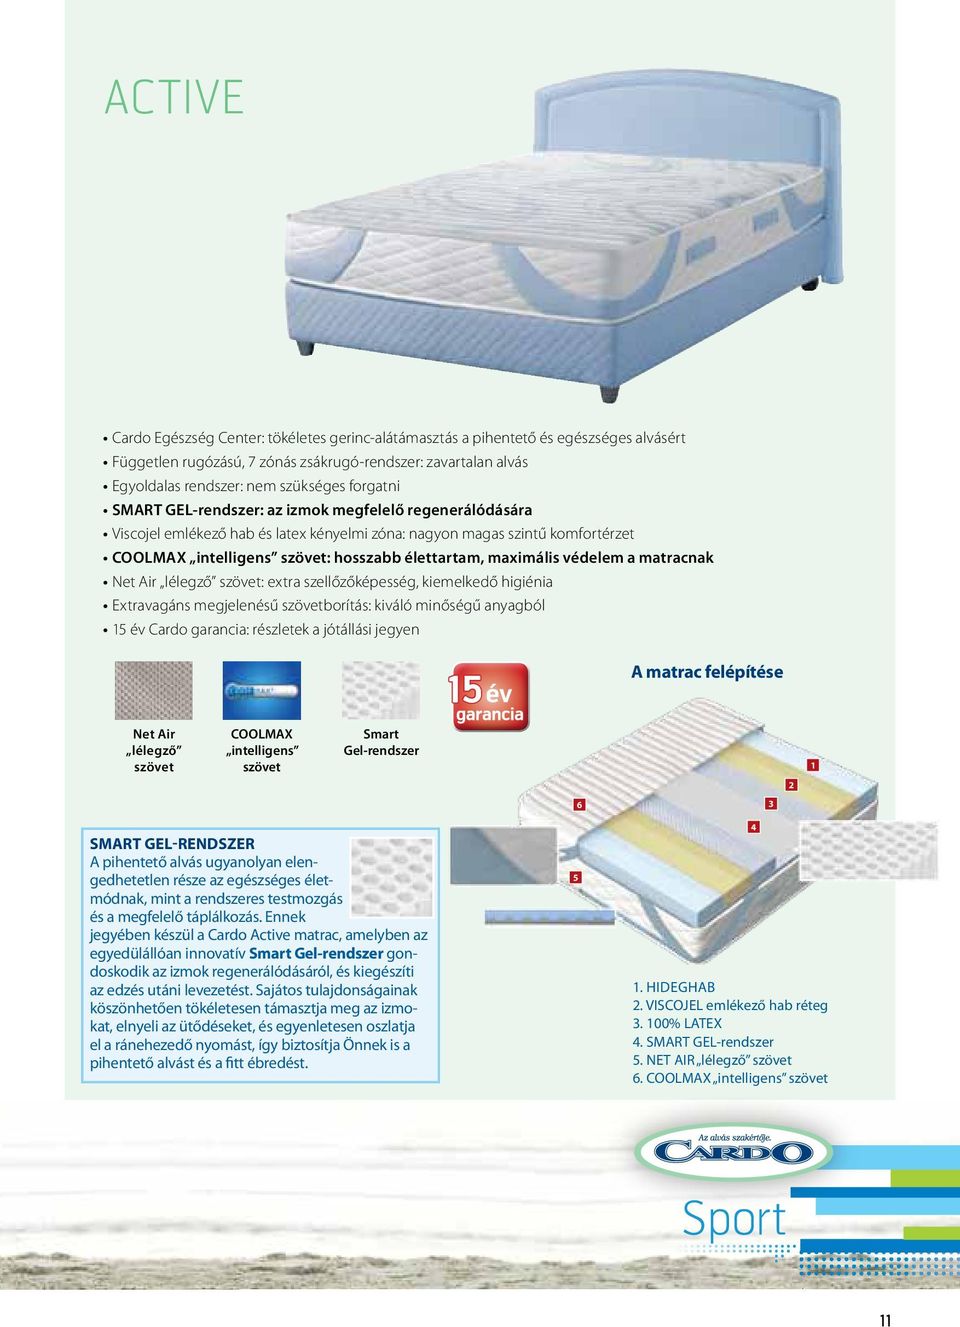 maximális védelem a matracnak Net Air lélegző szövet: extra szellőzőképesség, kiemelkedő higiénia Extravagáns megjelenésű szövetborítás: kiváló minőségű anyagból 15 év Cardo garancia: részletek a